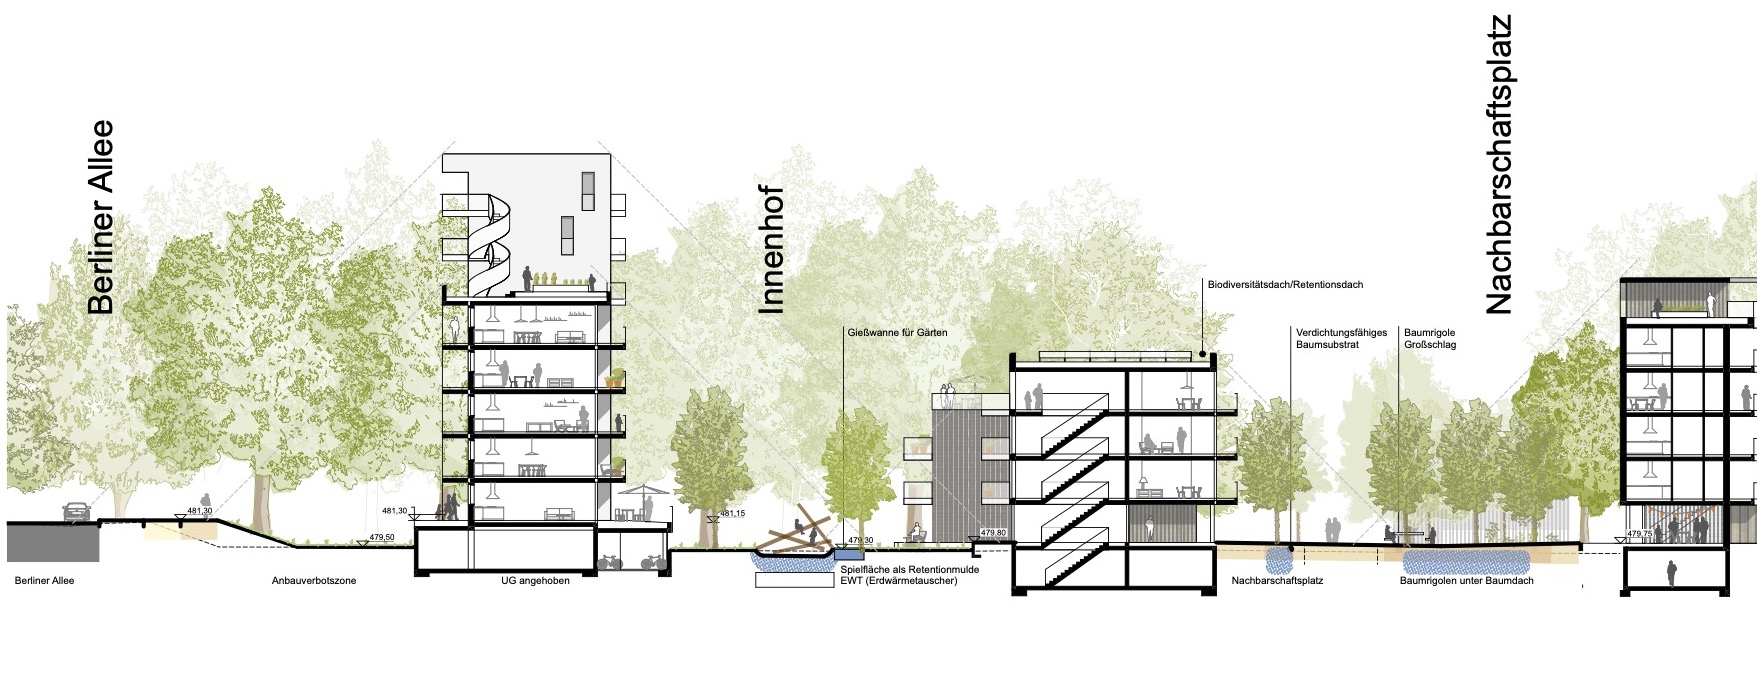 Wohnquartier an der Berliner Allee in Augsburg • Klimaanpassung im Wohnungsbau